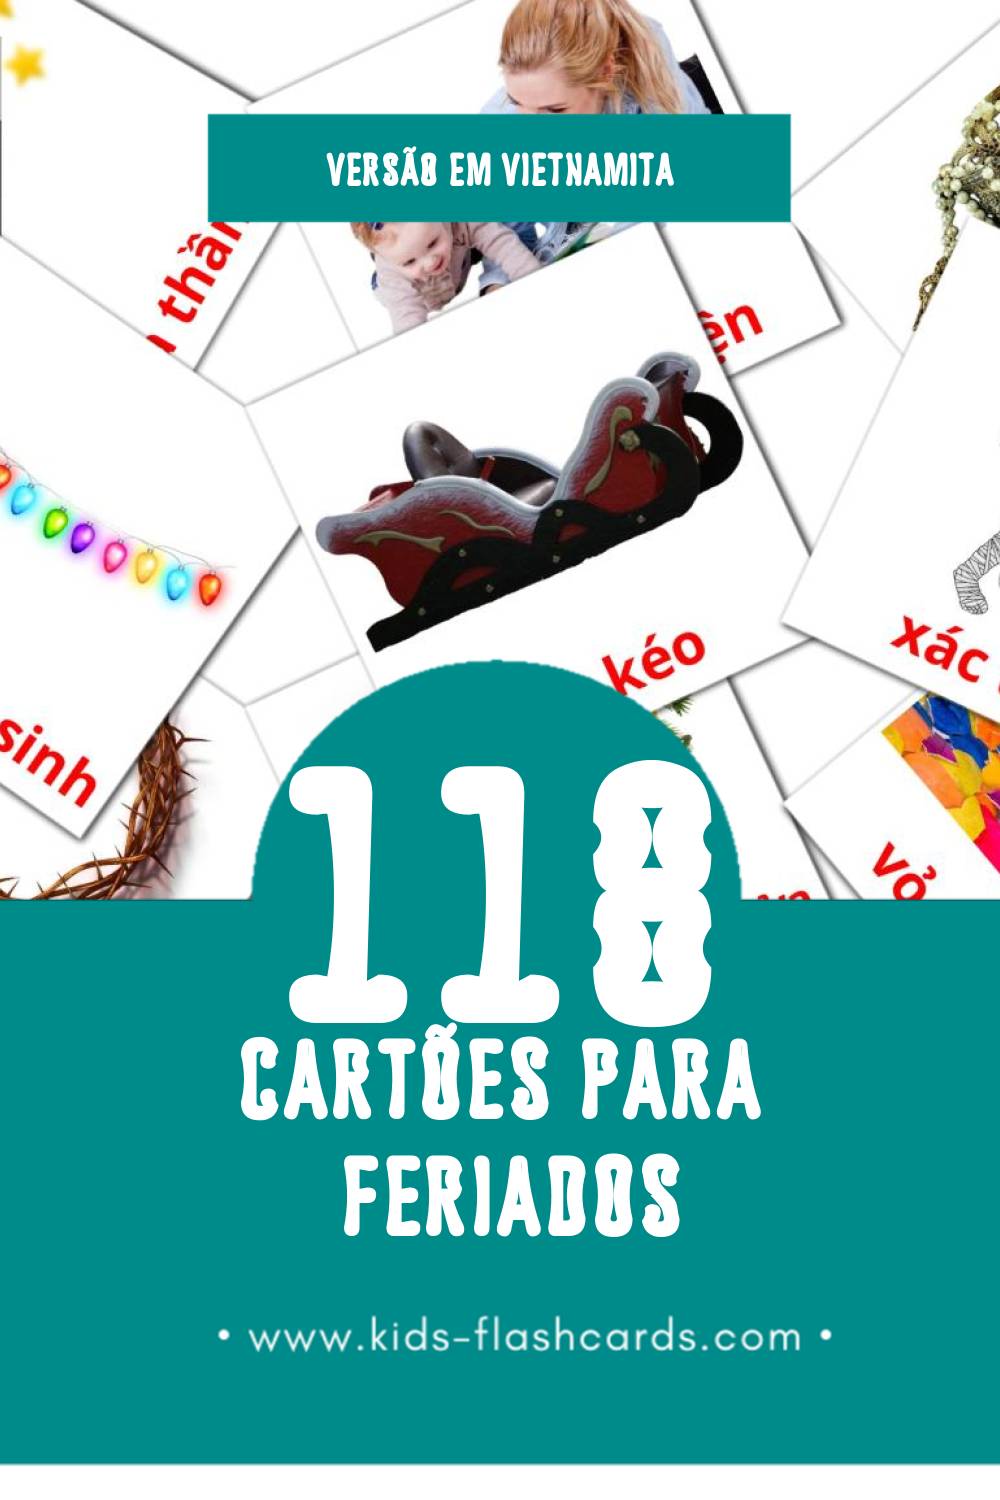 Flashcards de Ngày nghỉ Visuais para Toddlers (118 cartões em Vietnamita)